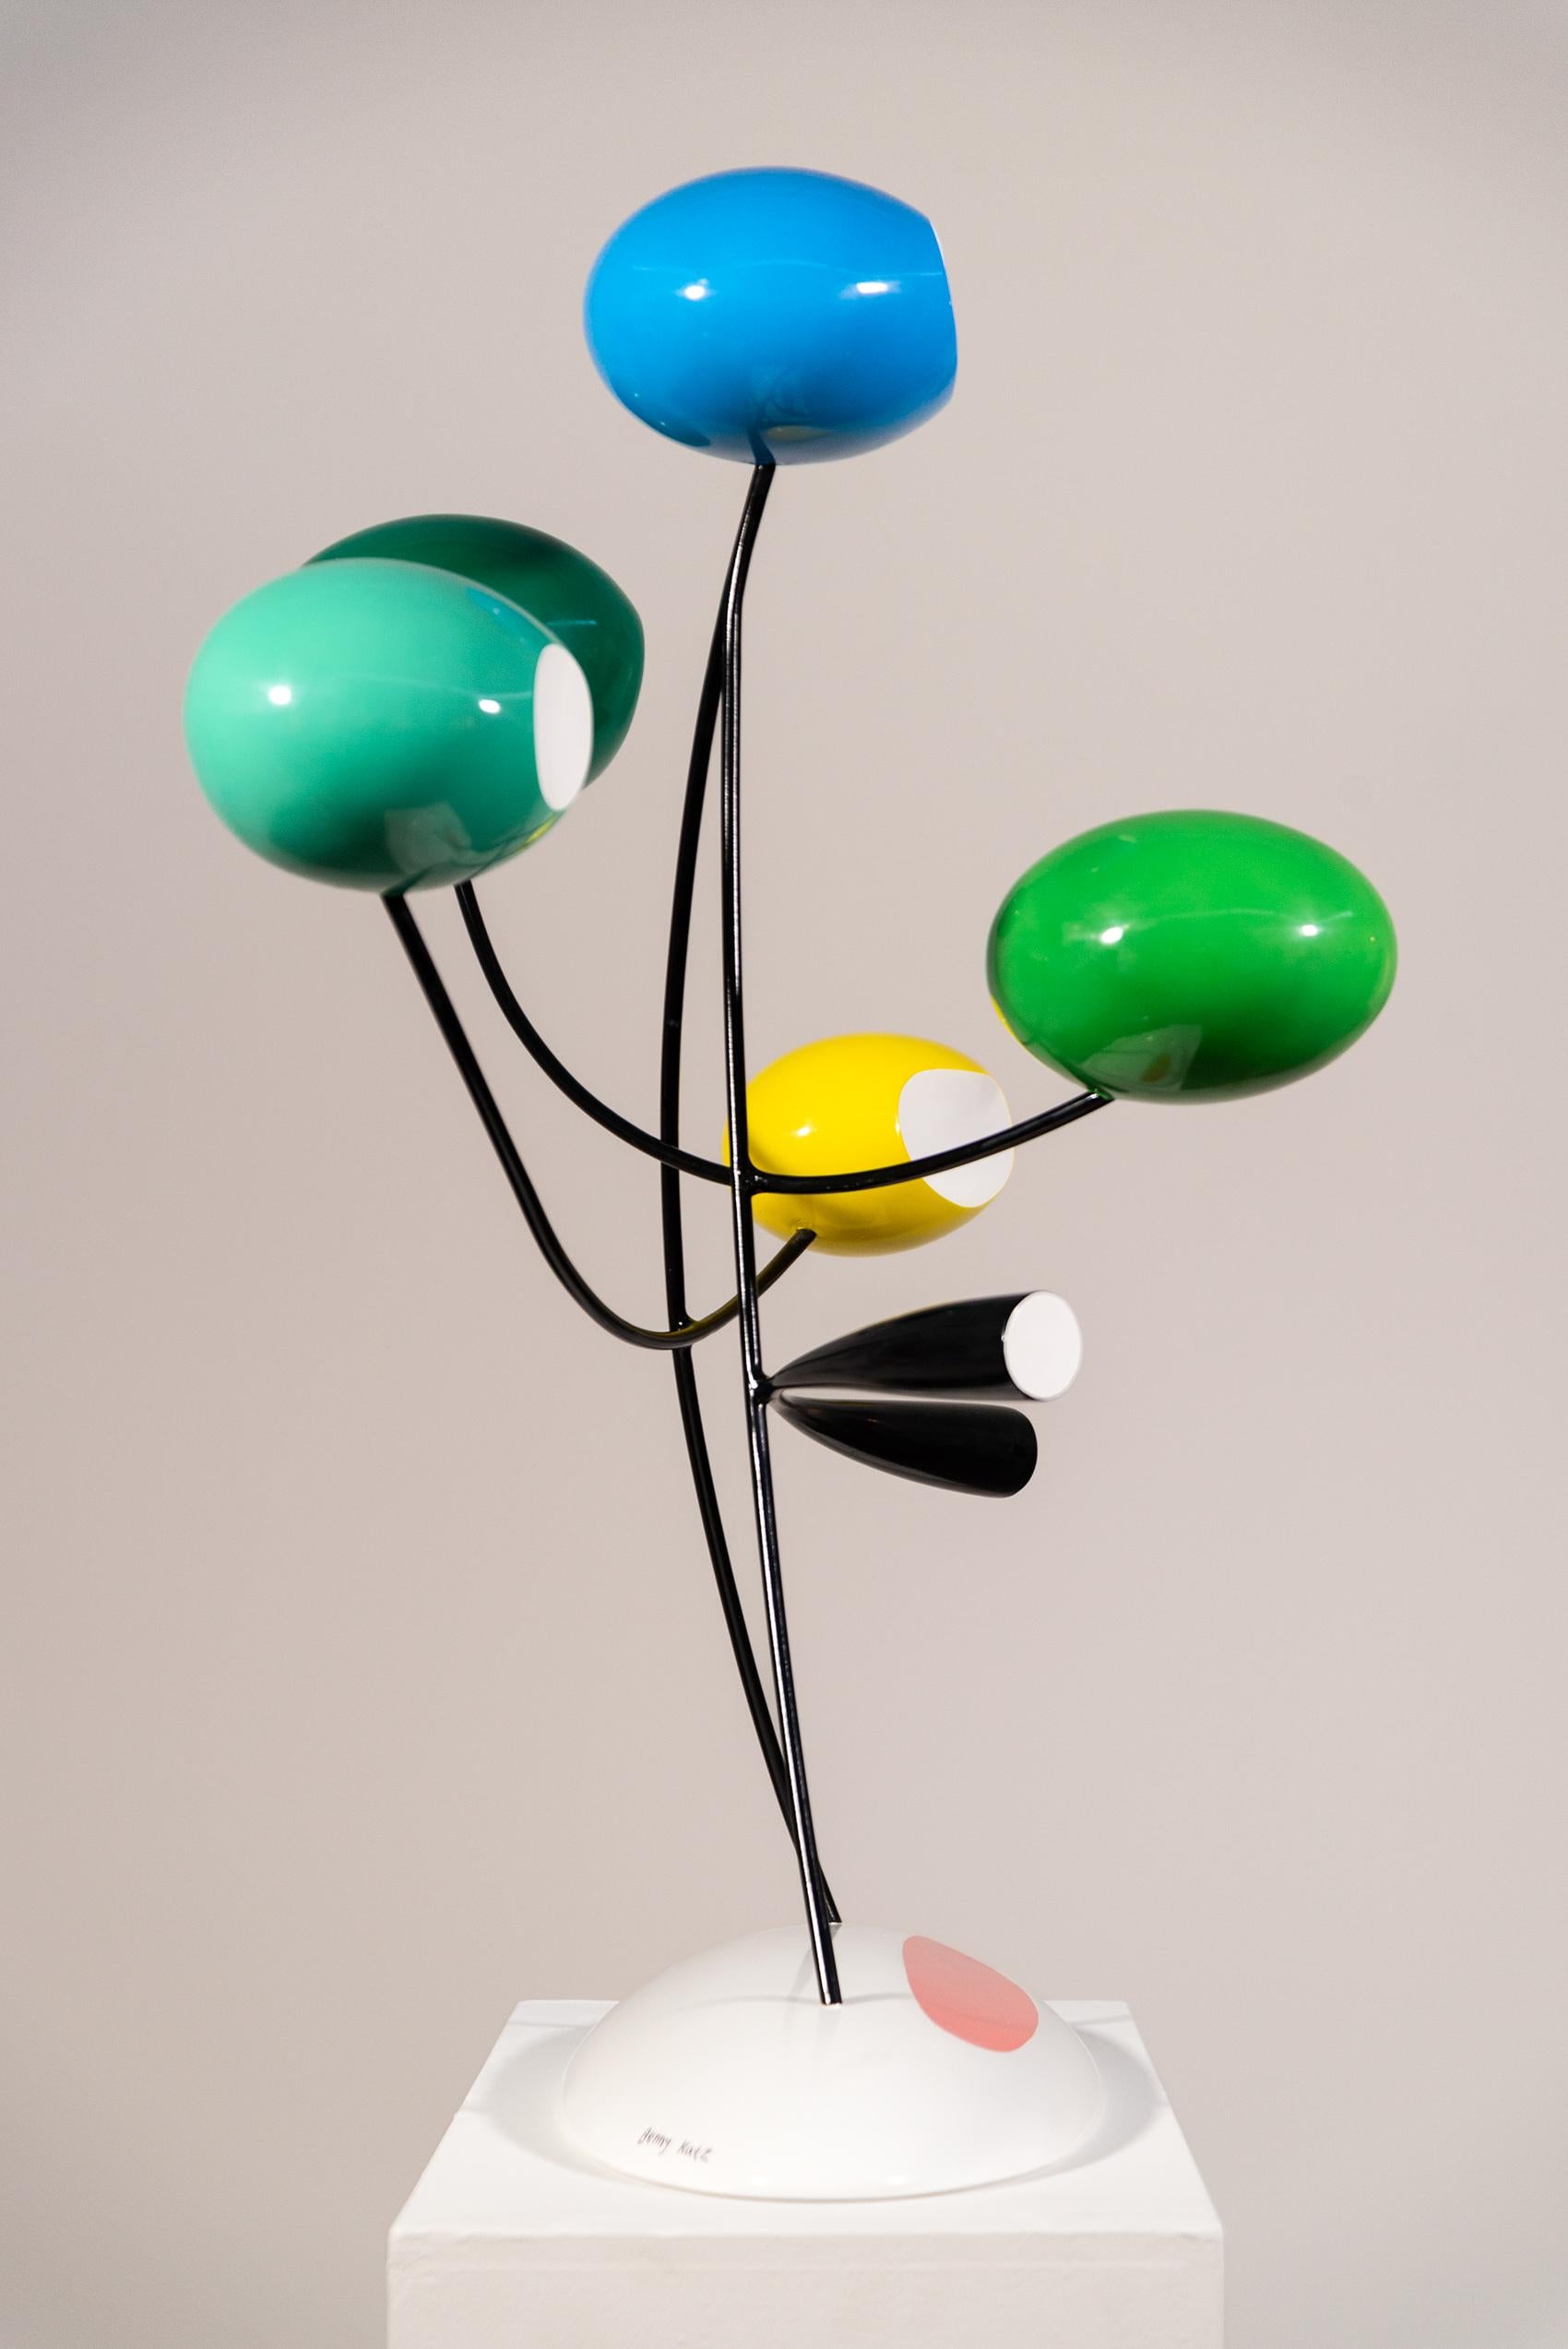 Vanessa (Flowers series) - modern, abstract, contemporary, fiberglass sculpture - Sculpture by Benny Katz